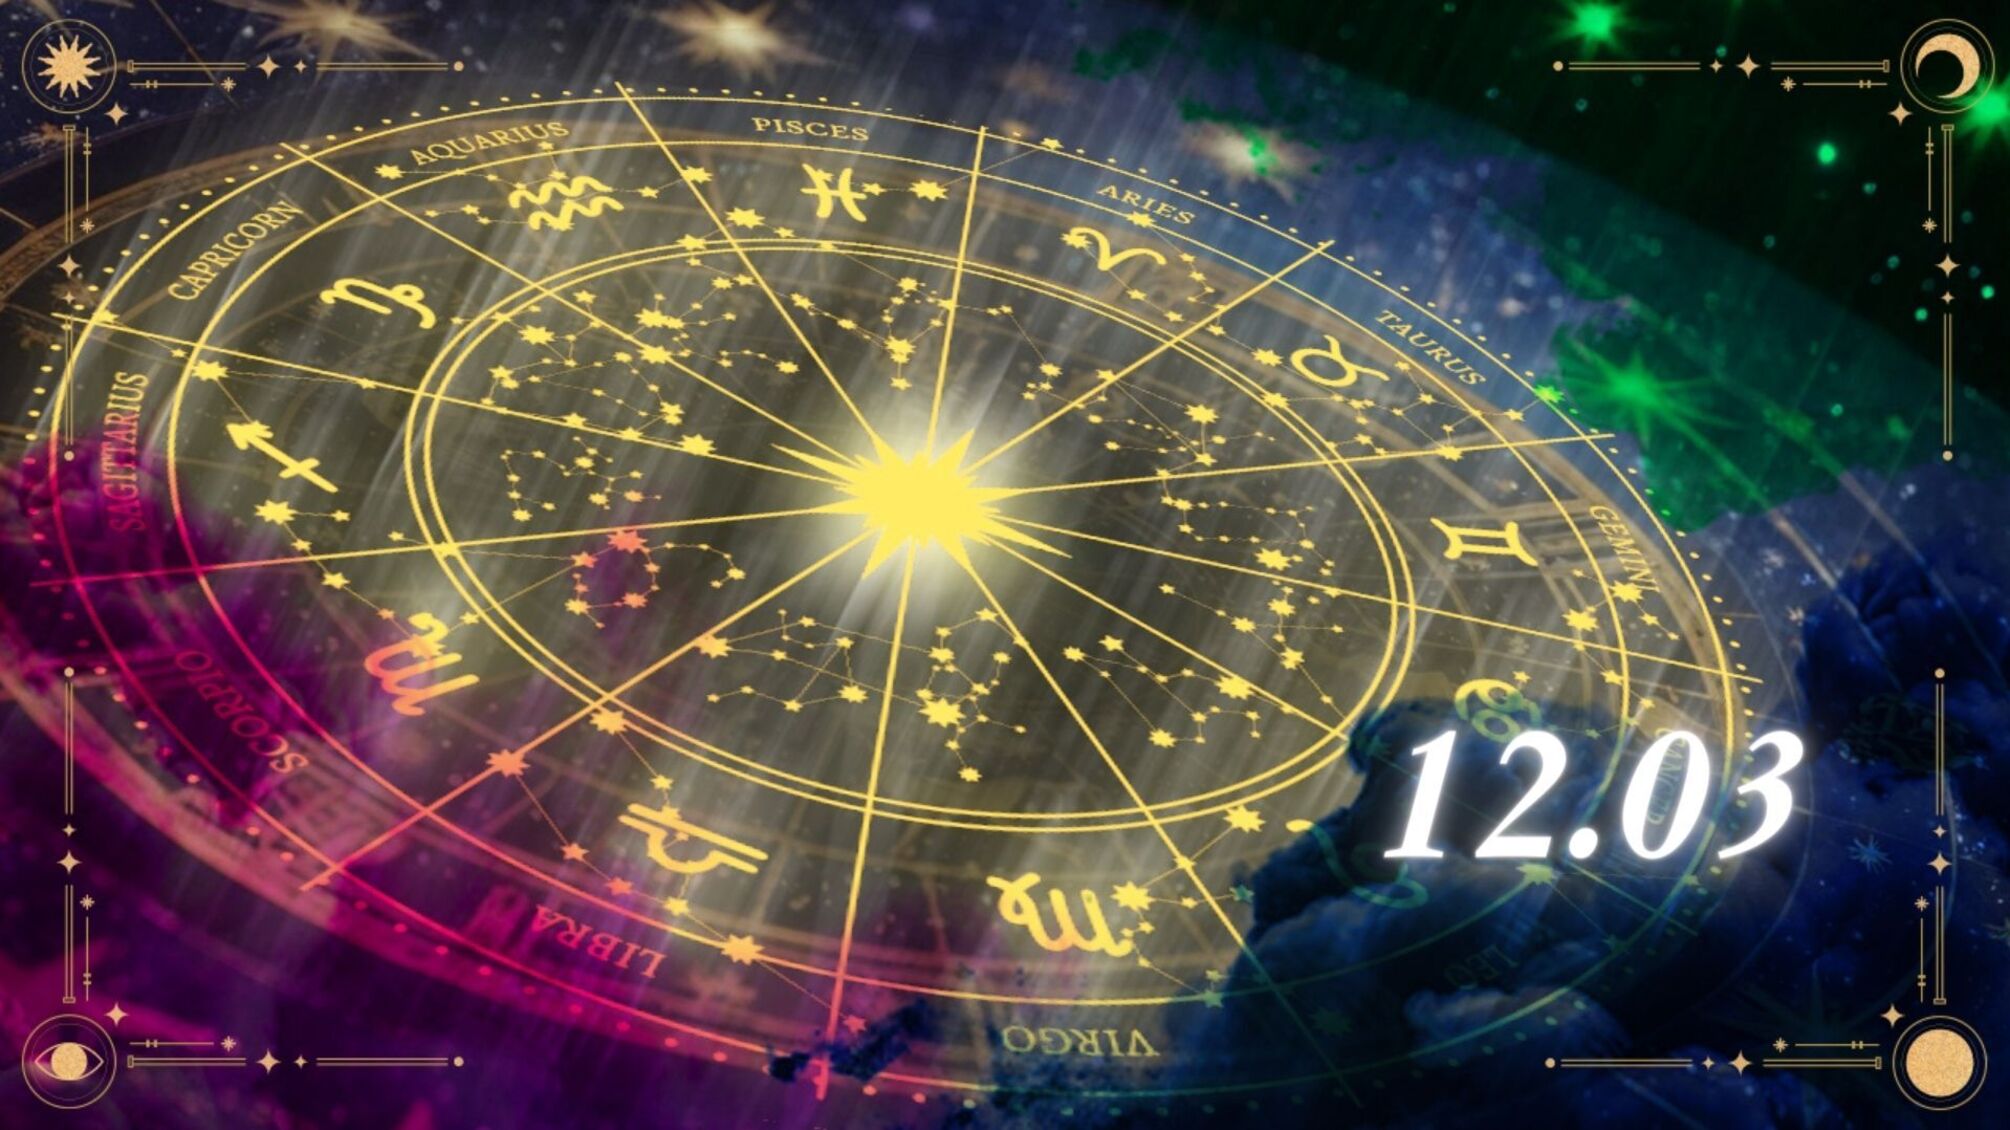 Овни закохають у себе, Скорпіони матимуть відповідальний день: що розповіли зірки знакам на 12.03